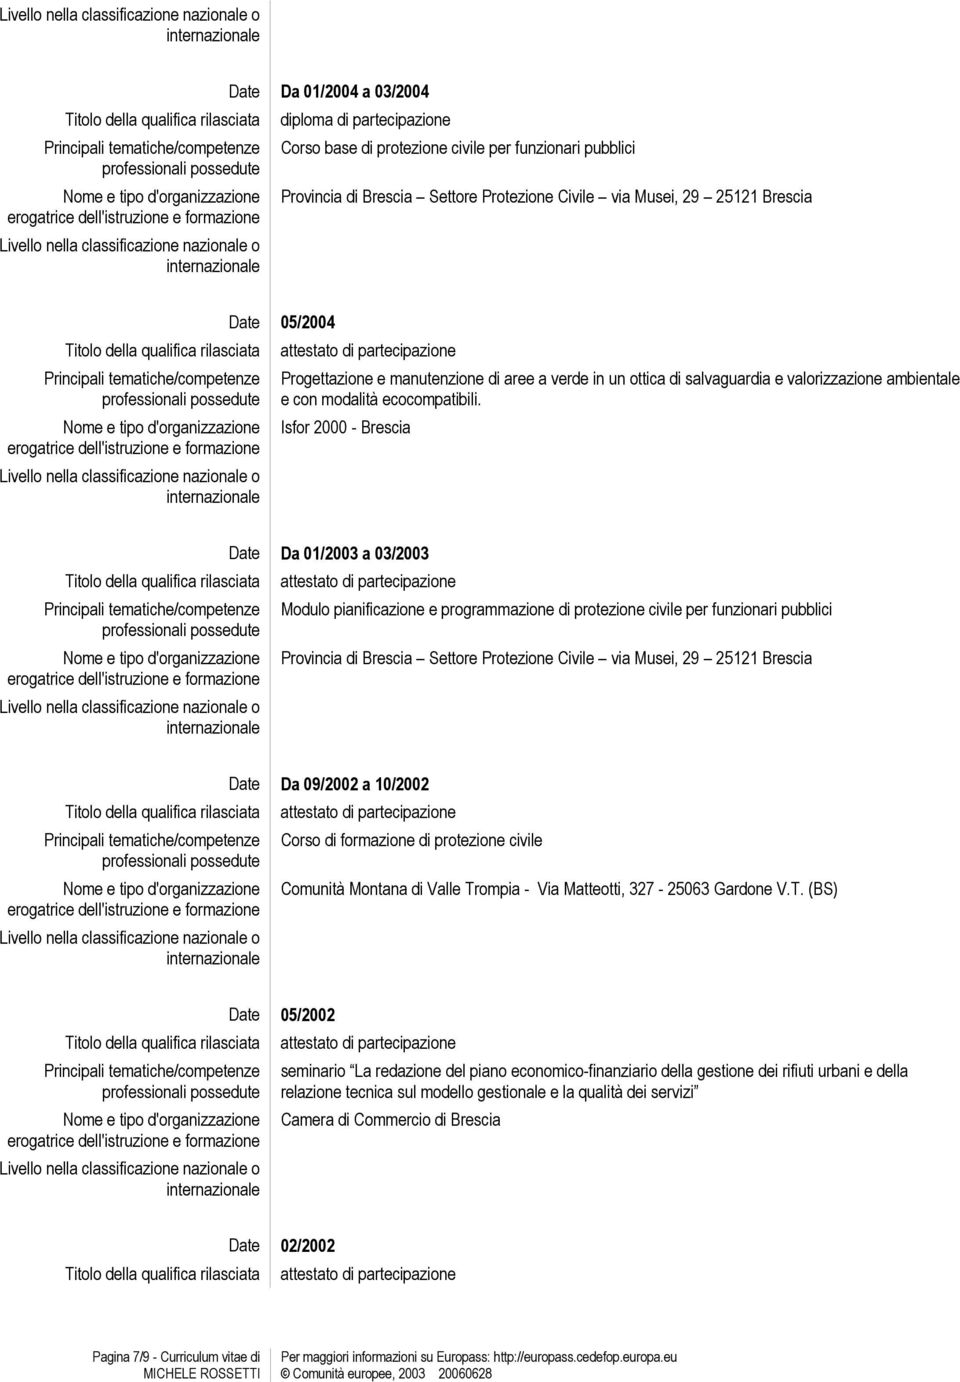 Isfor 2000 - Brescia Date Da 01/2003 a 03/2003 Modulo pianificazione e programmazione di protezione civile per funzionari pubblici Provincia di Brescia Settore Protezione Civile via Musei, 29 25121